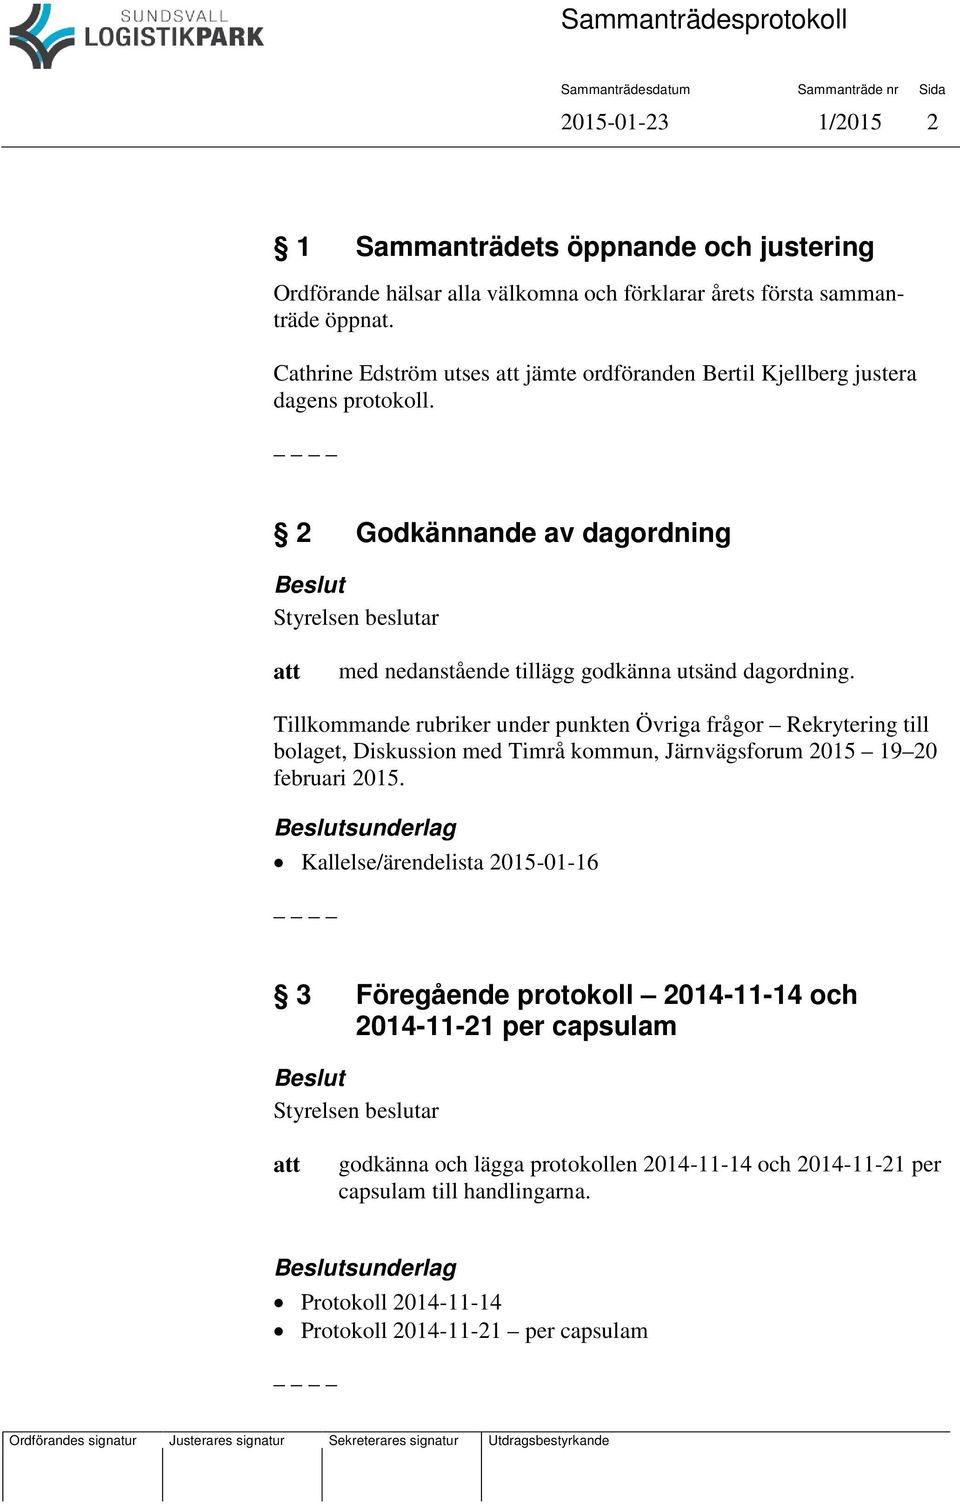 Tillkommande rubriker under punkten Övriga frågor Rekrytering till bolaget, Diskussion med Timrå kommun, Järnvägsforum 2015 19 20 februari 2015.